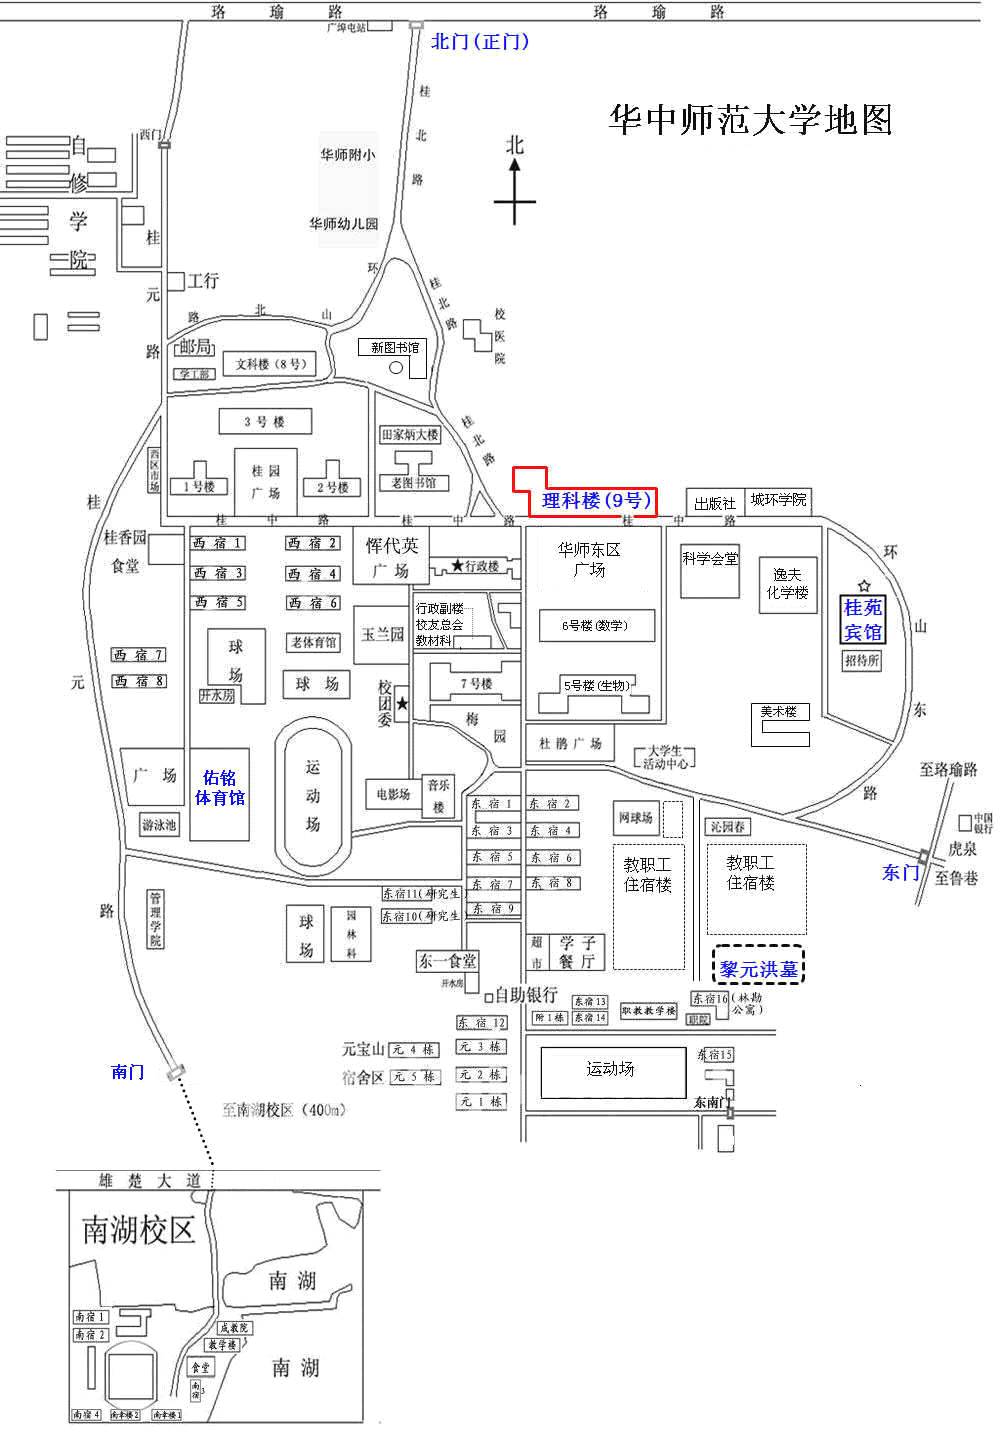 西安海棠职业学院地图图片